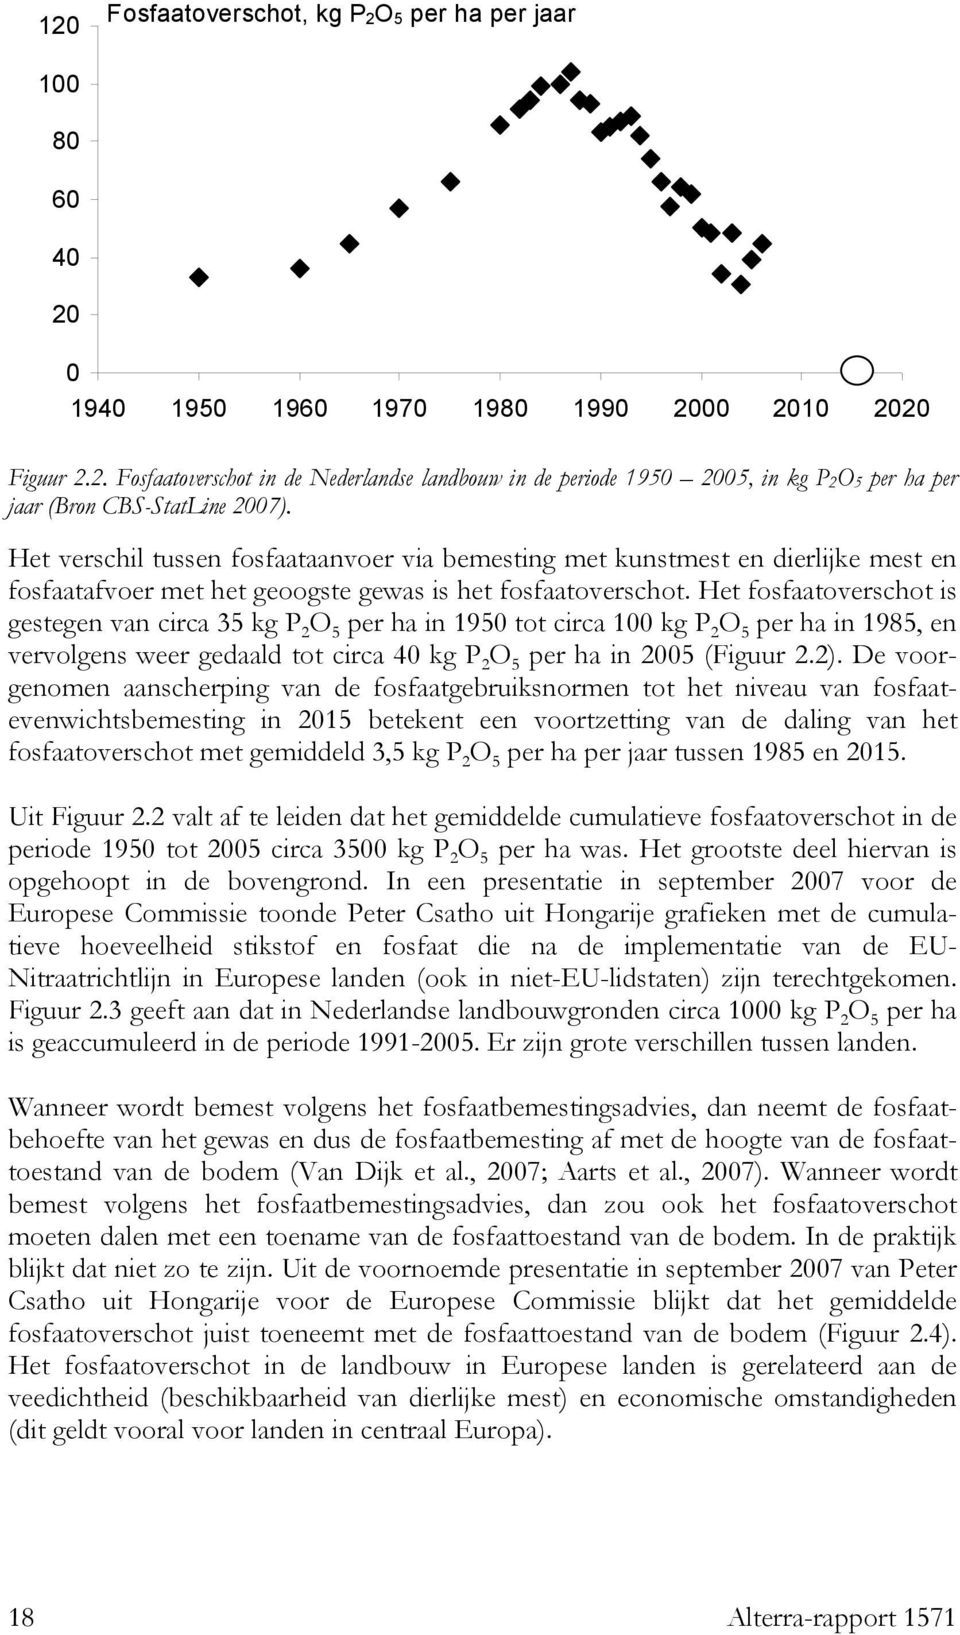 Het fosfaatoverschot is gestegen van circa 35 kg P 2 O 5 per ha in 1950 tot circa 100 kg P 2 O 5 per ha in 1985, en vervolgens weer gedaald tot circa 40 kg P 2 O 5 per ha in 2005 (Figuur 2.2).